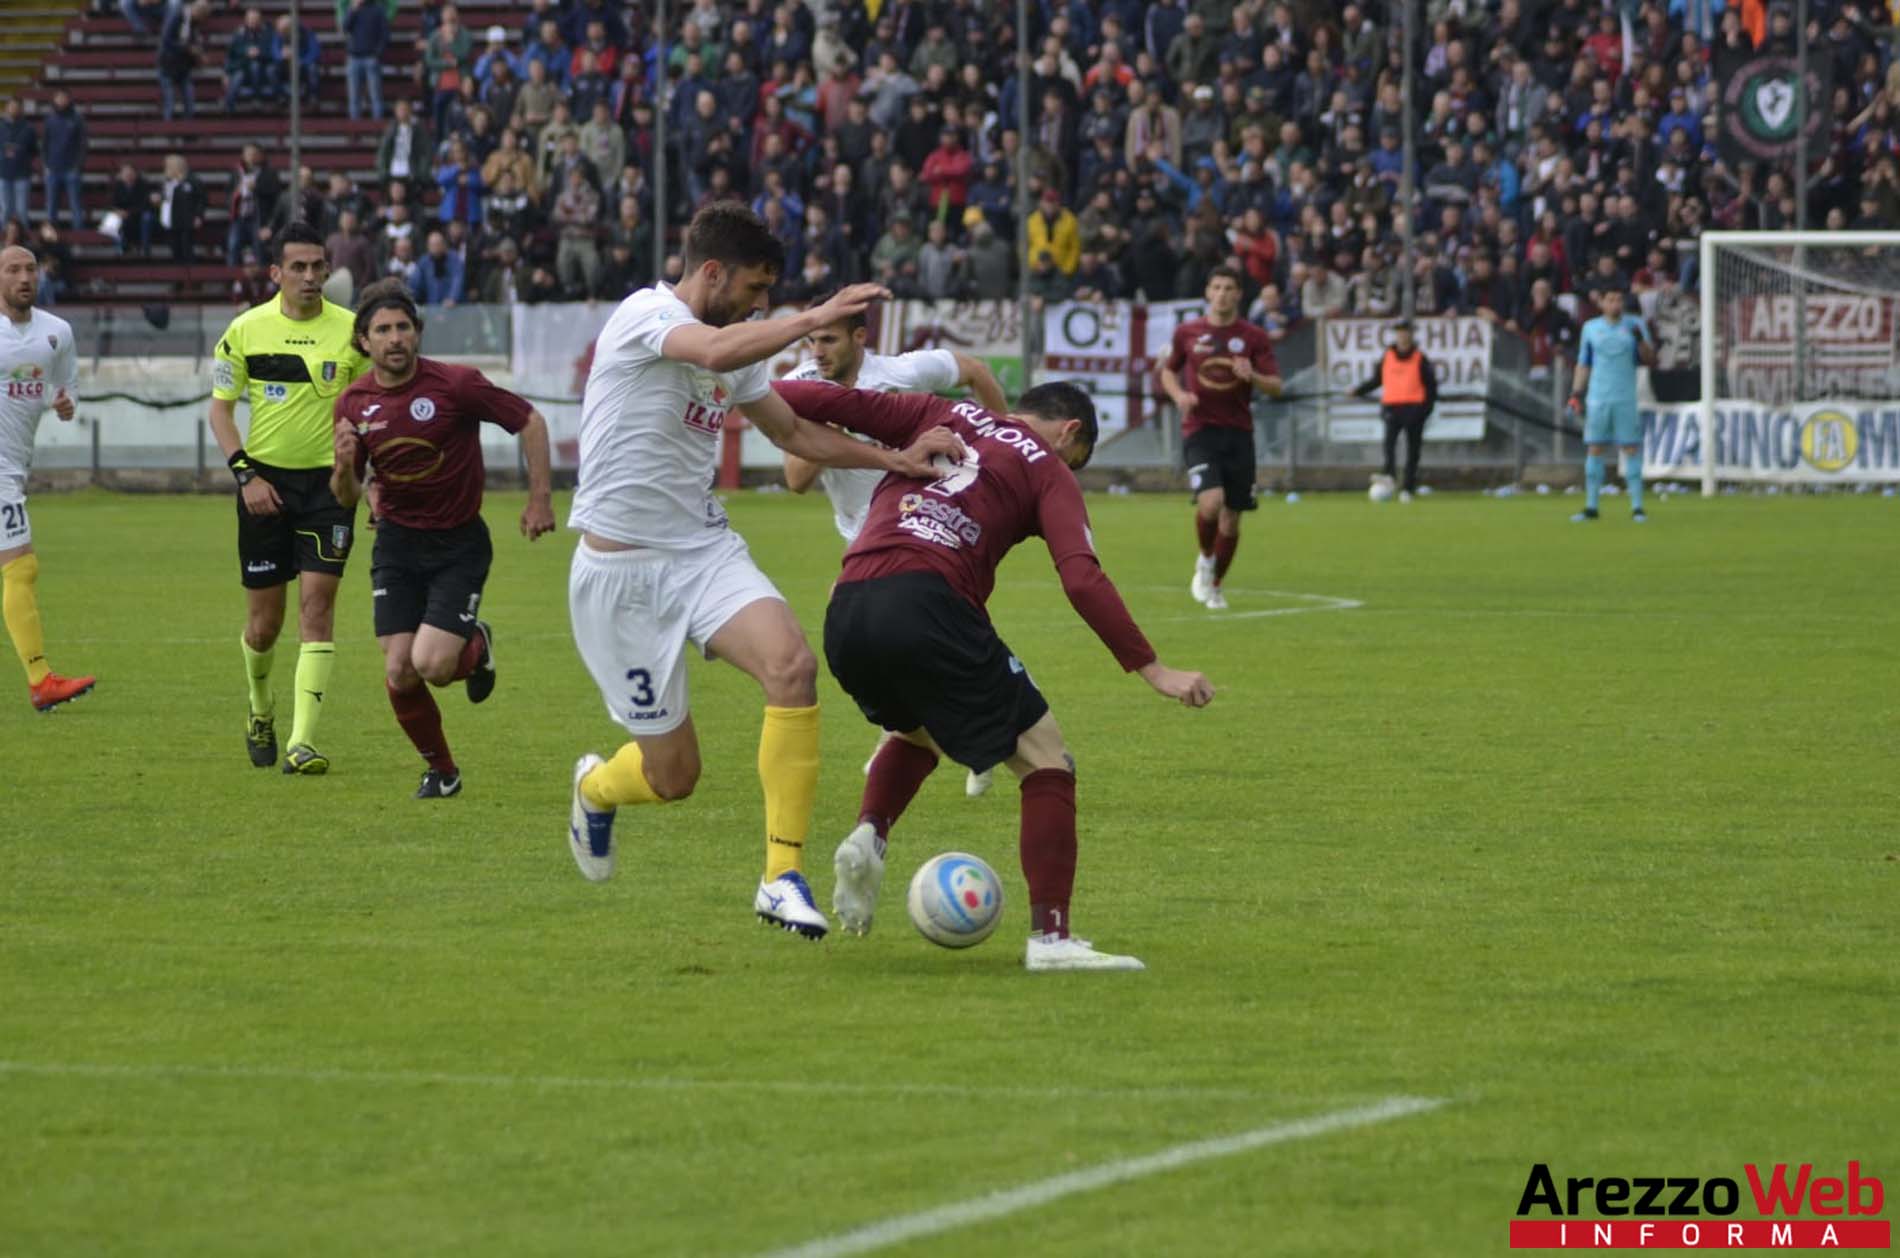 Arezzo-Viterbese 3-0, l’approfondimento sulla partita